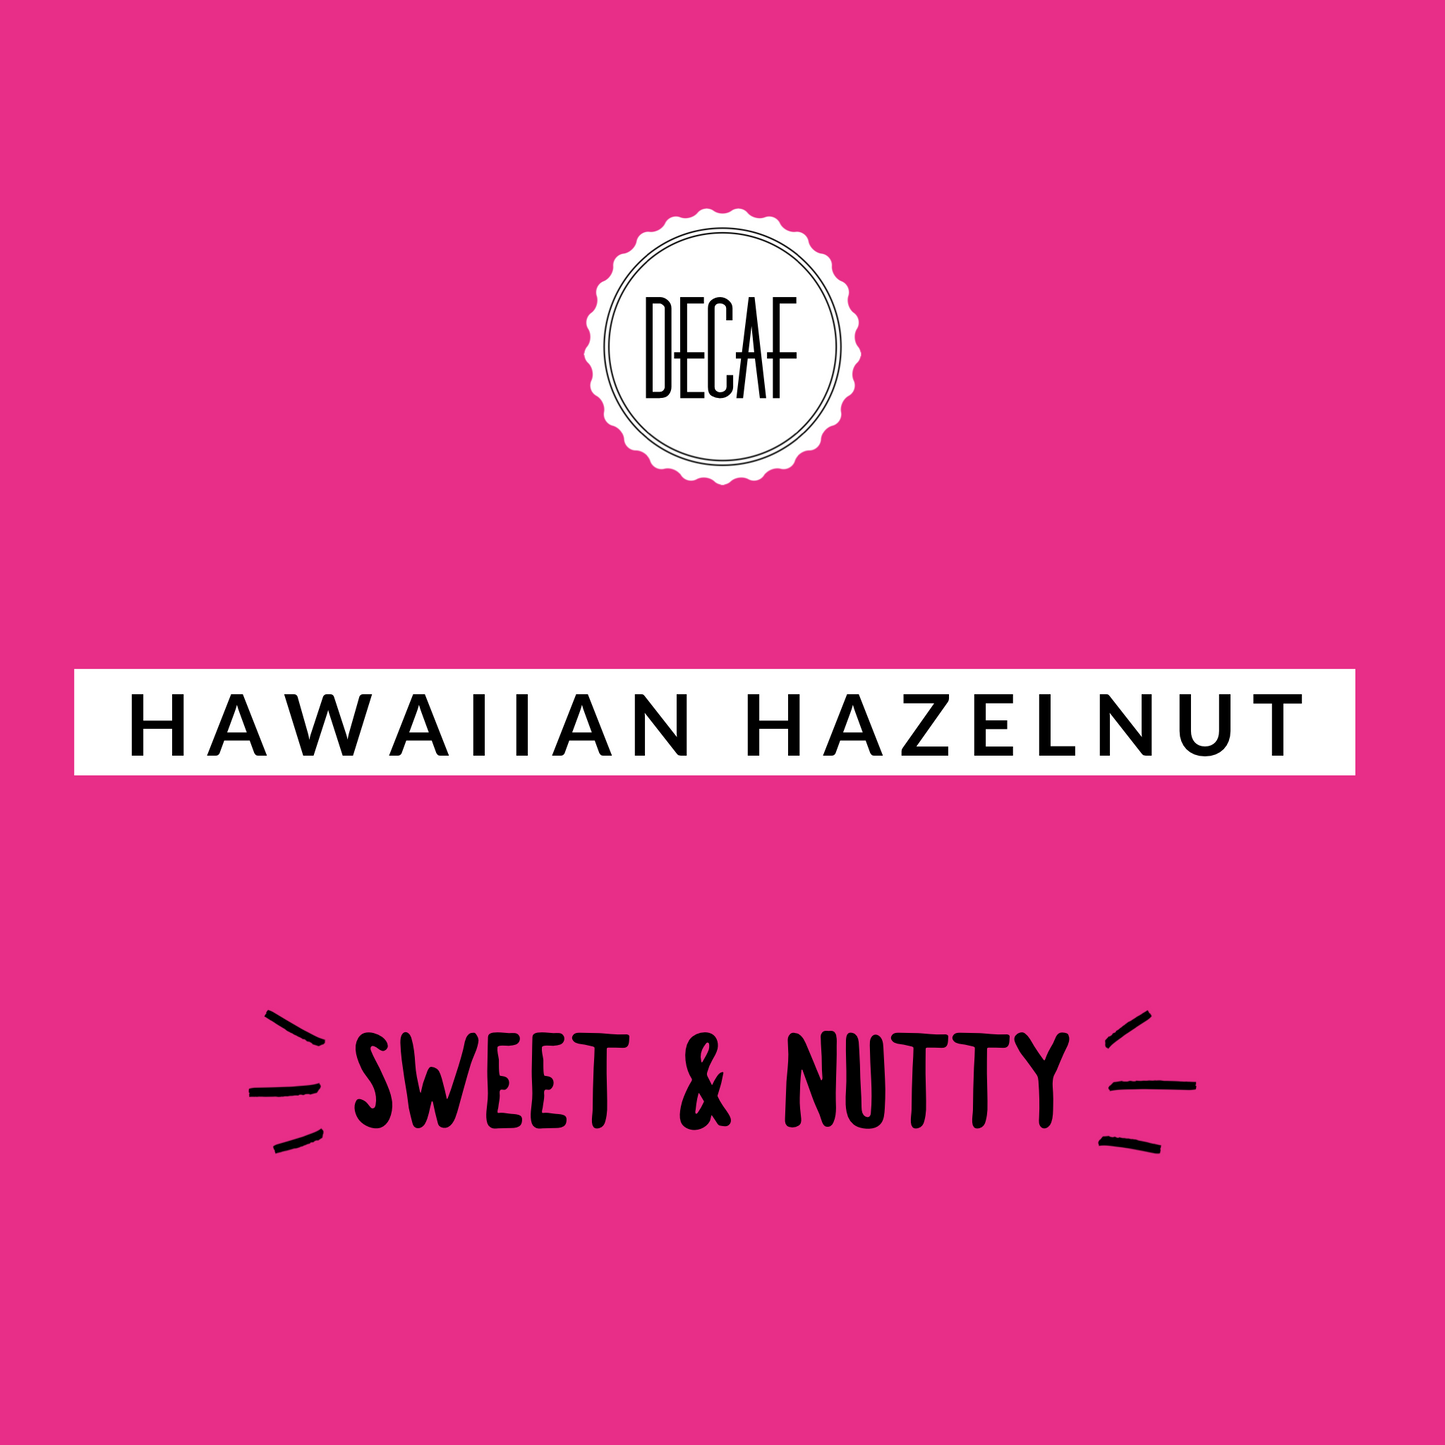 Hawaiian Hazelnut Decaf